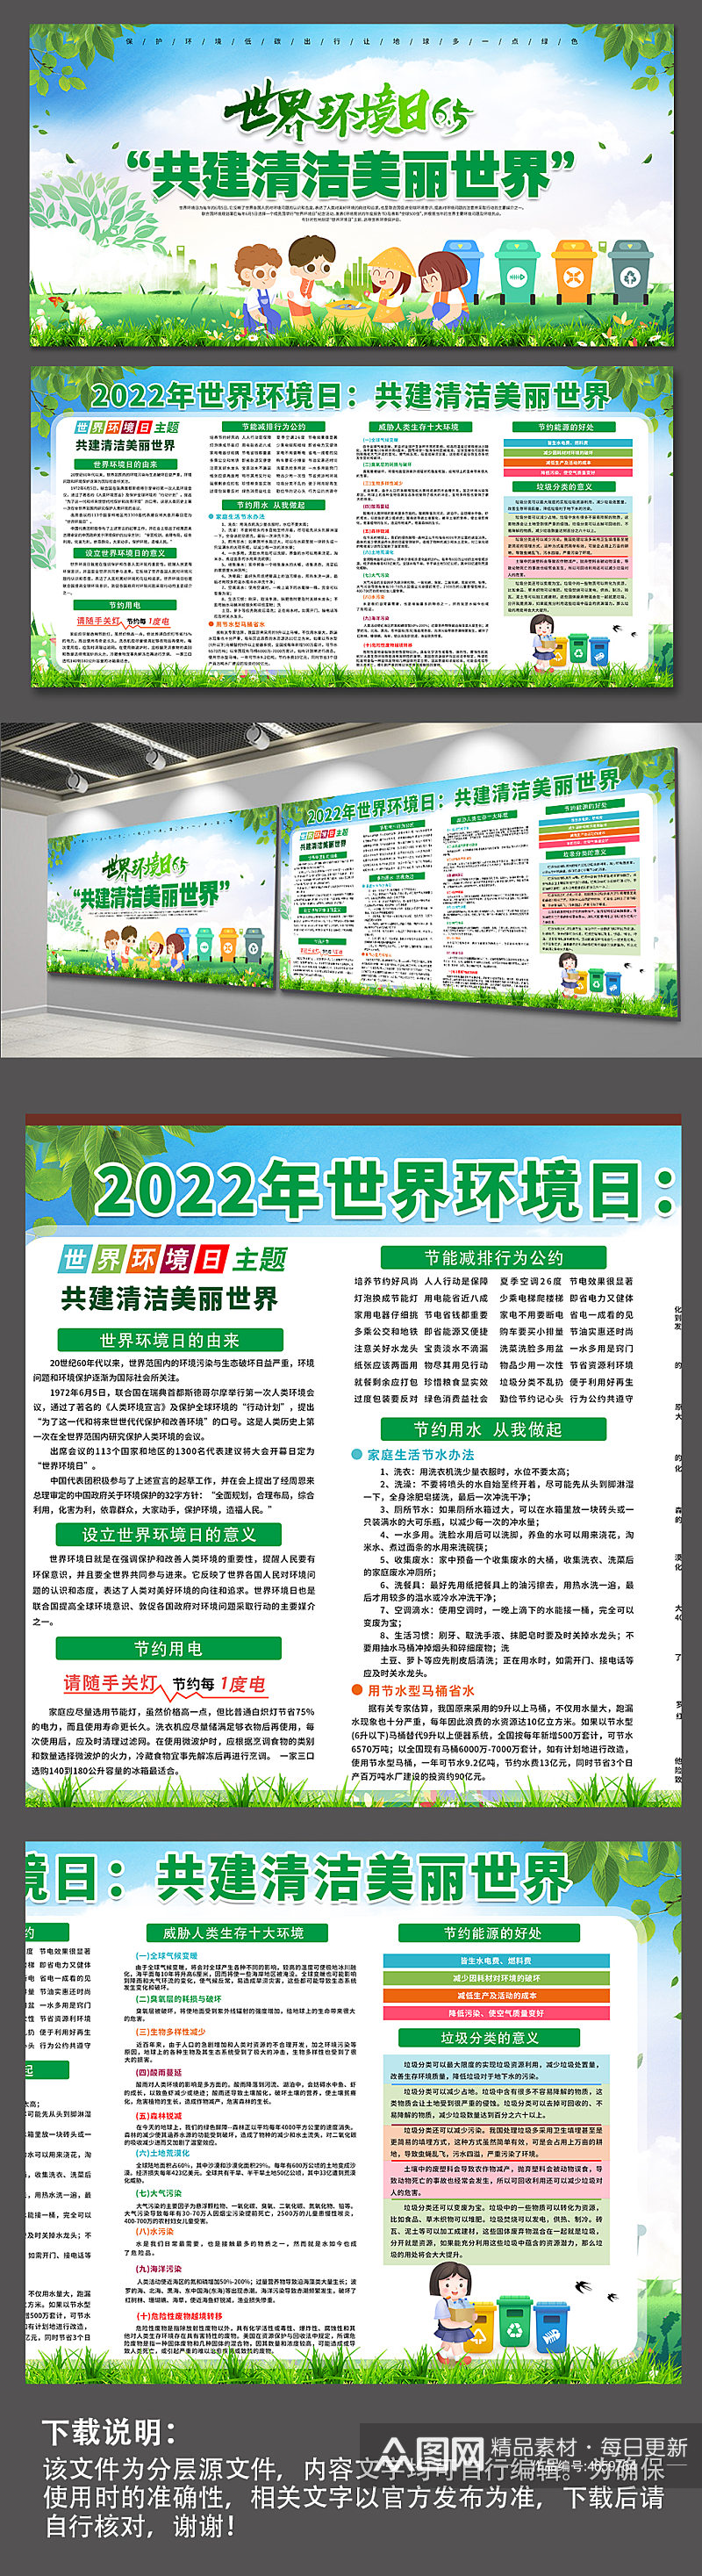 2022世界环境日保护日主题环保海报展板素材